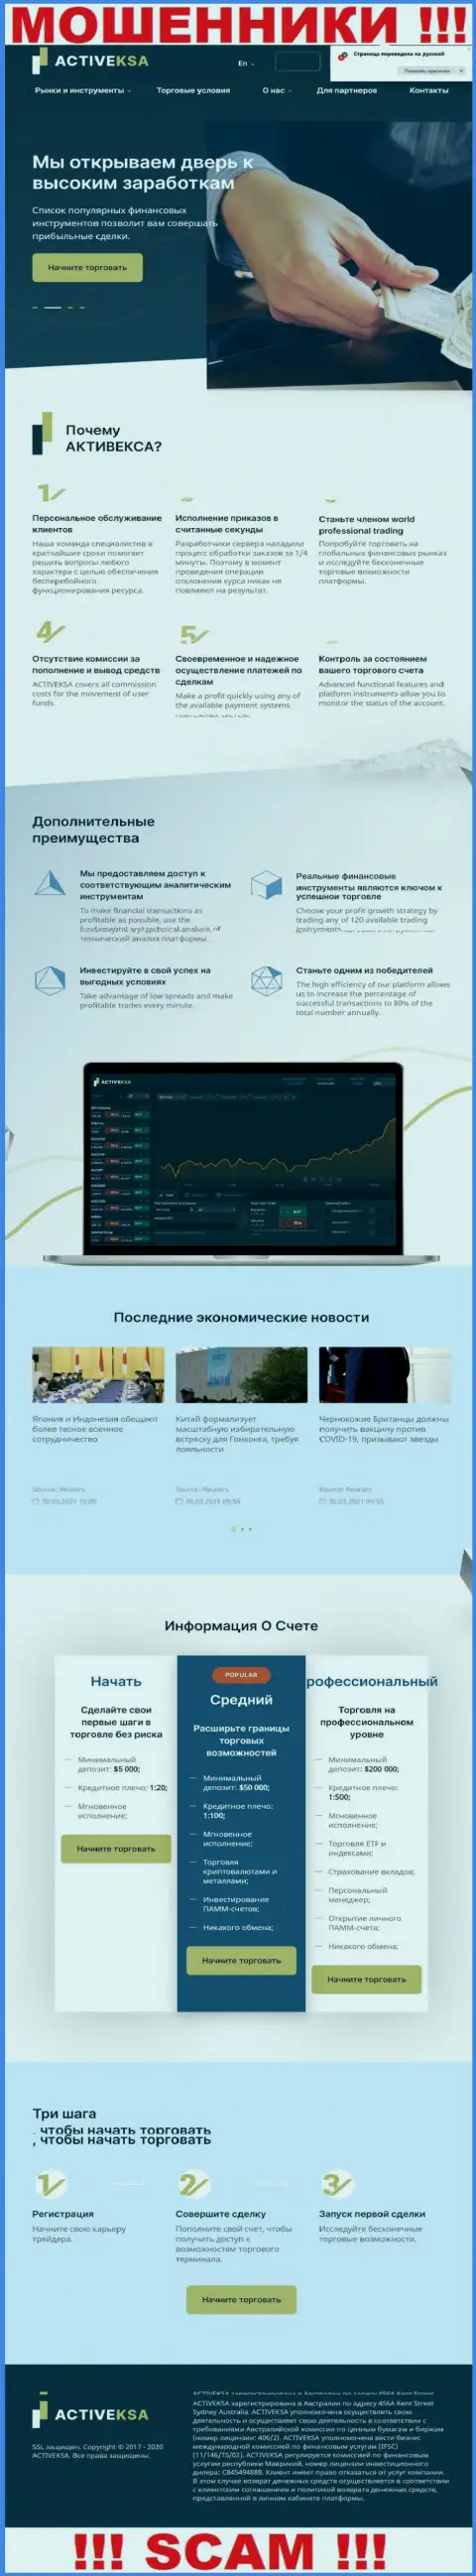 Активекса Ком - это официальный сайт internet-мошенников Activeksa